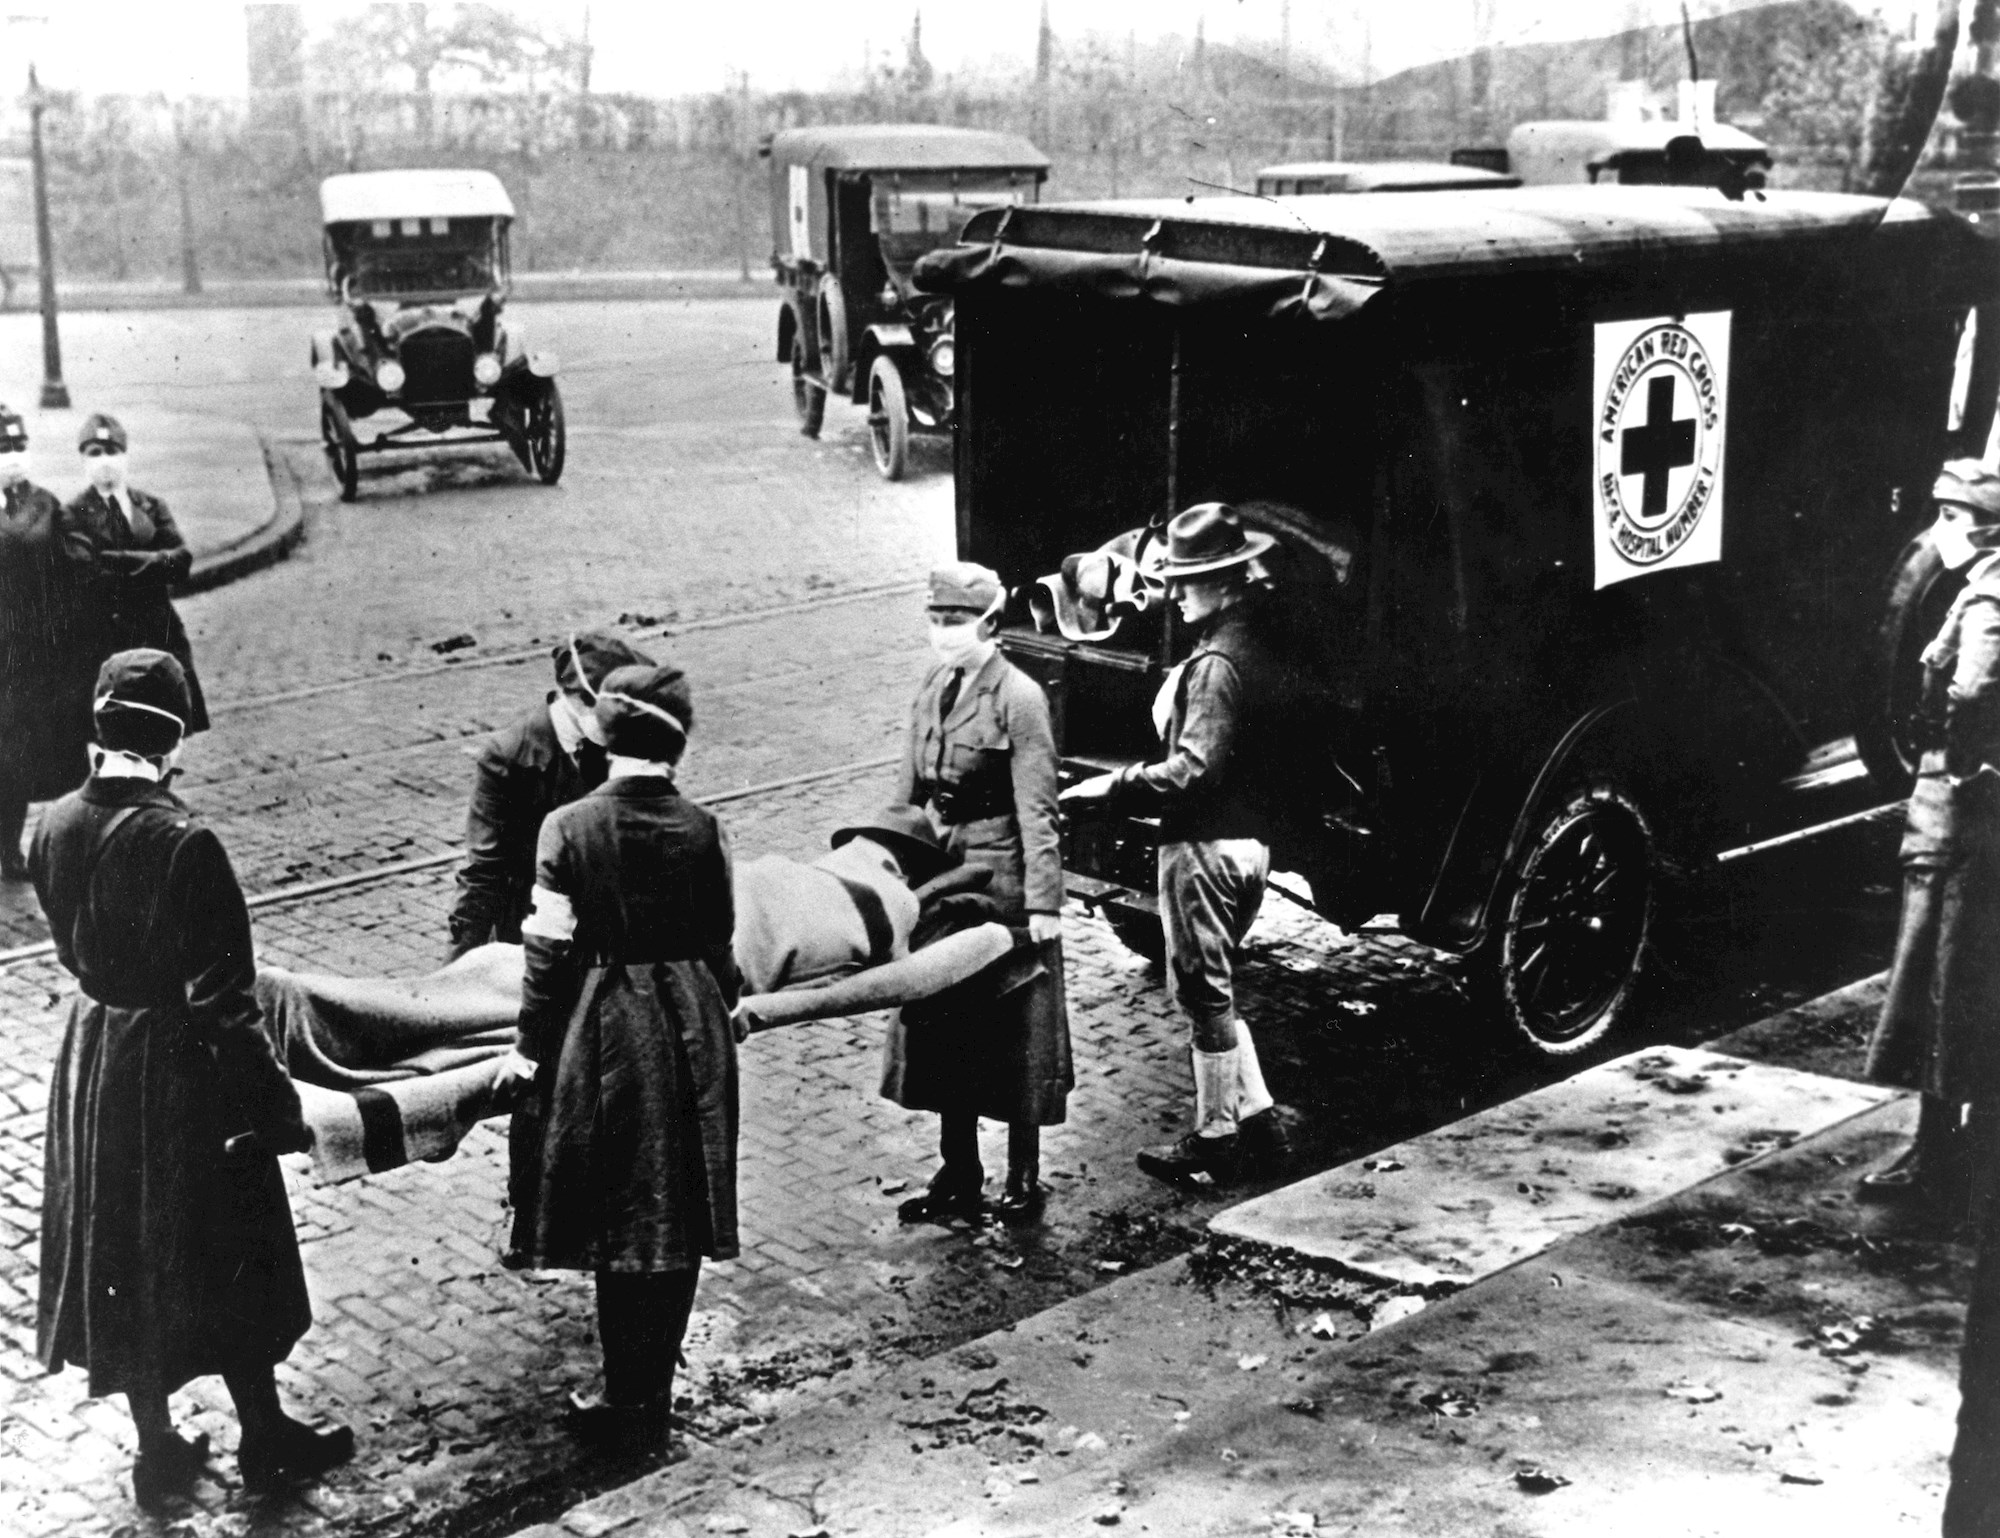 De la gripe de 1918 a Covid-19 de 2020: Lecciones a aprender un siglo después